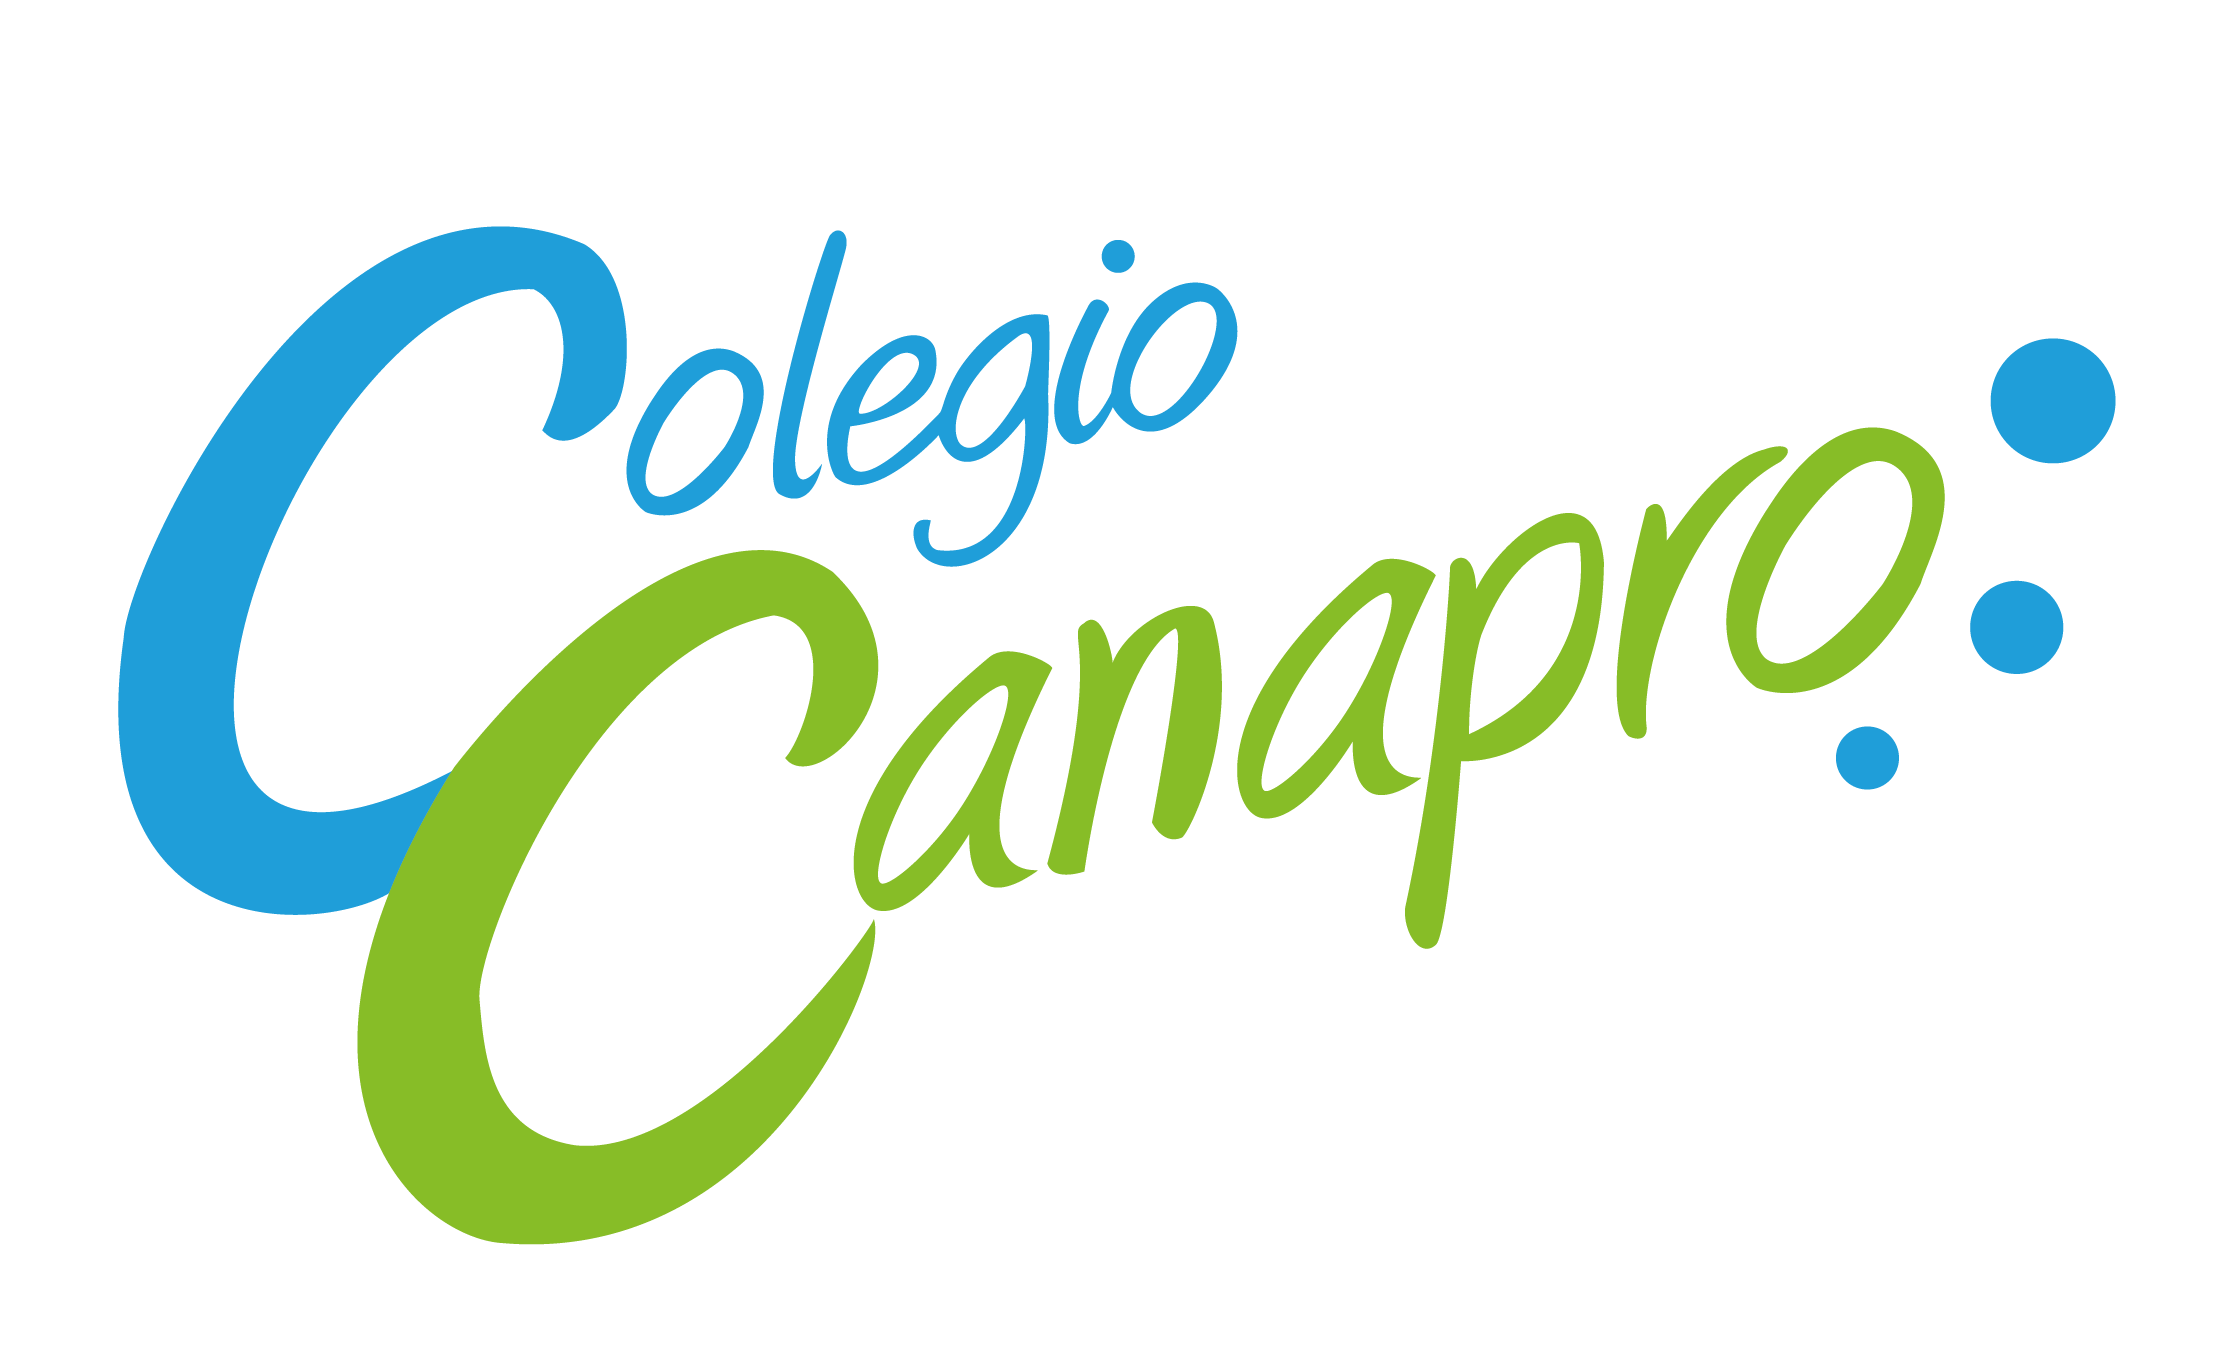 LOGO COLEGIO CANAPRO-01